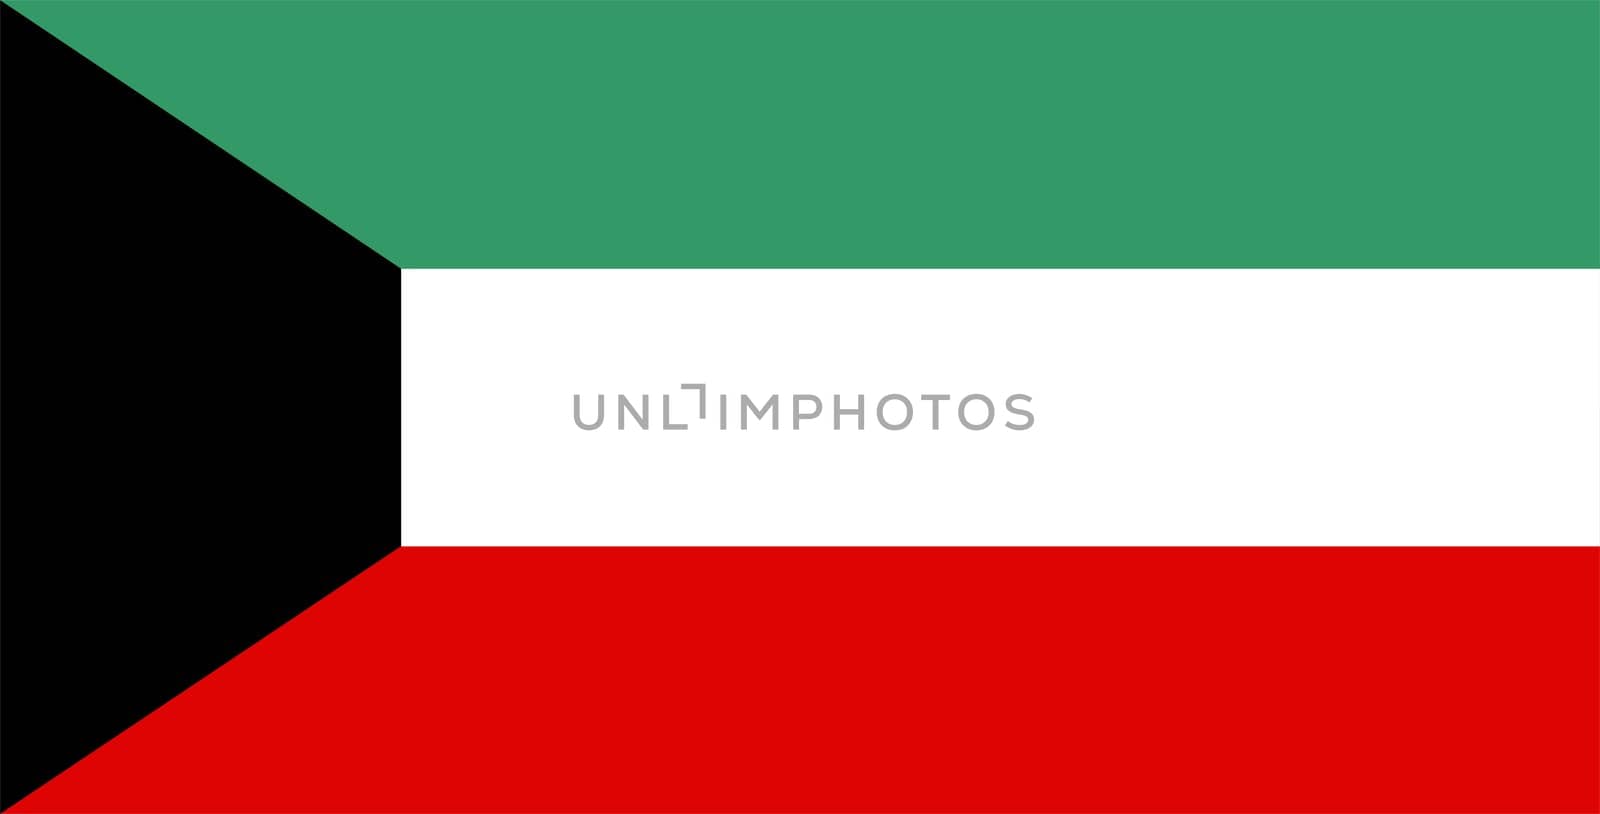 Kuwait national flag. Illustration on white background